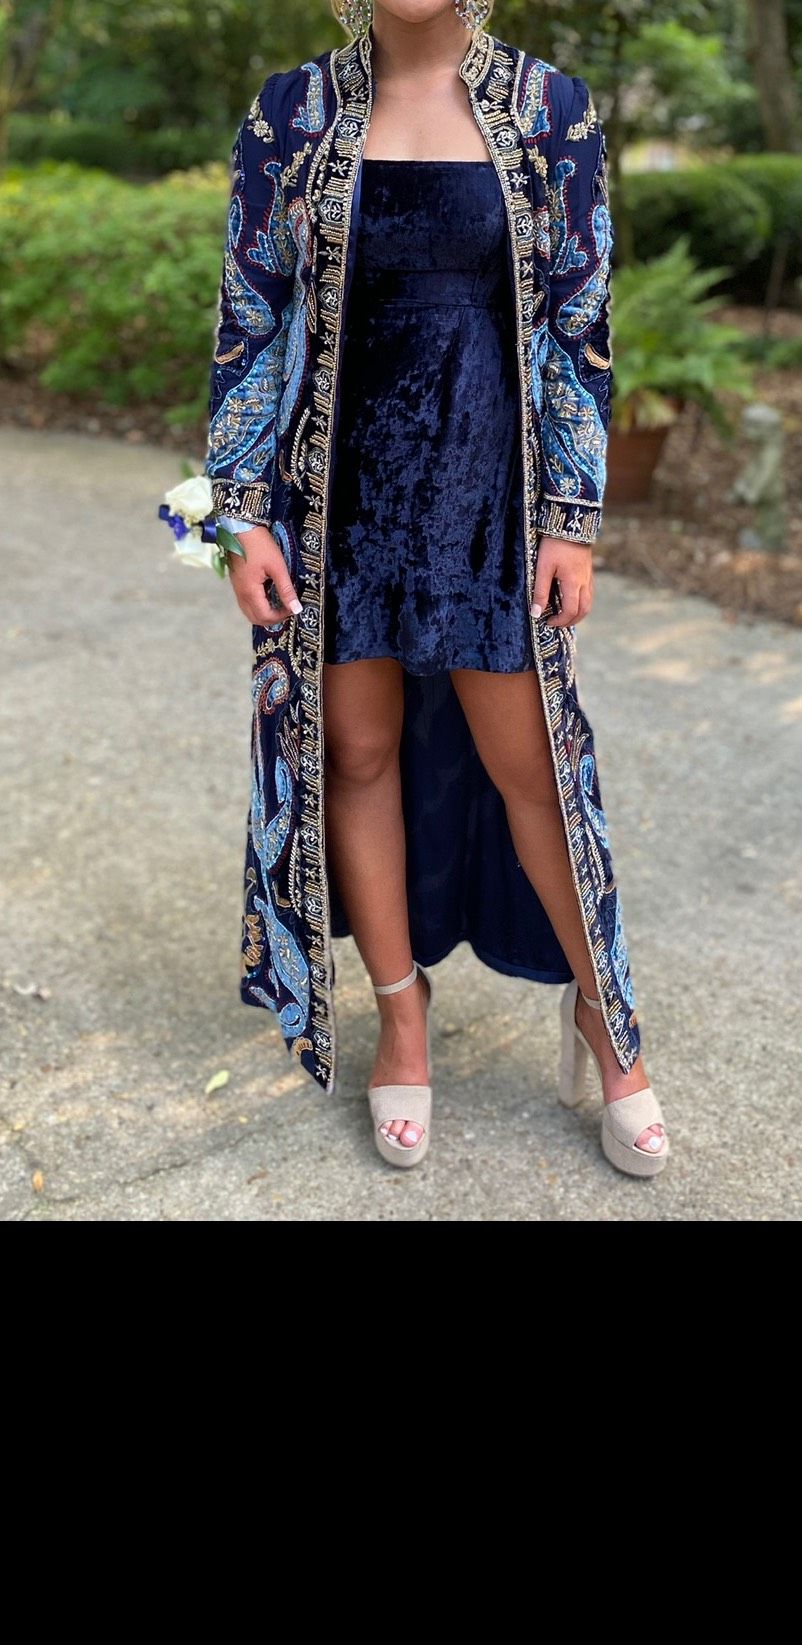 Sherri Hill Size 2 Strapless Velvet Blue Cocktail Dress on Queenly